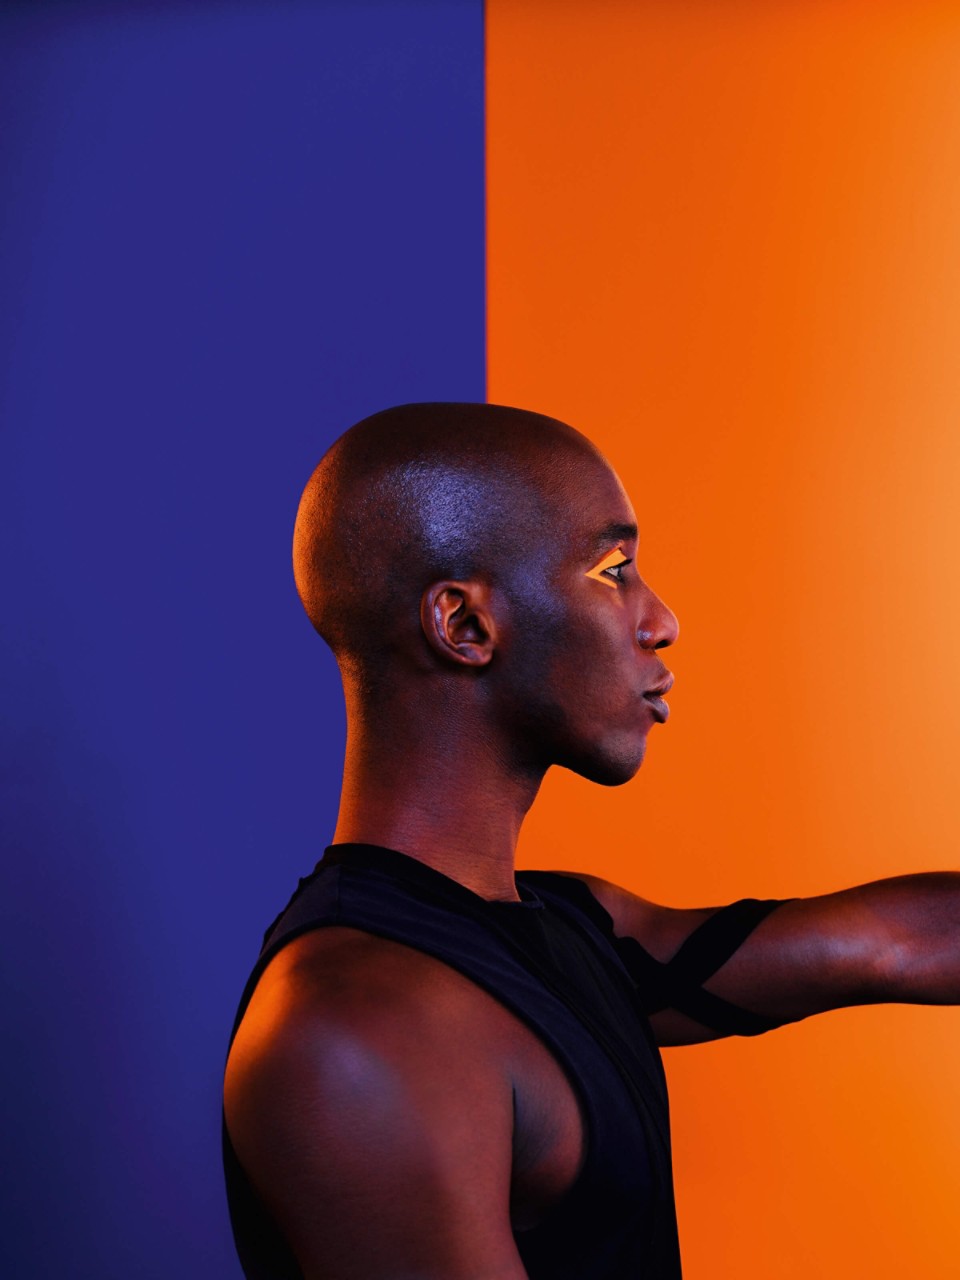 Mann mit orangenem Eyeliner steht vor einer blau-orangenen Wand